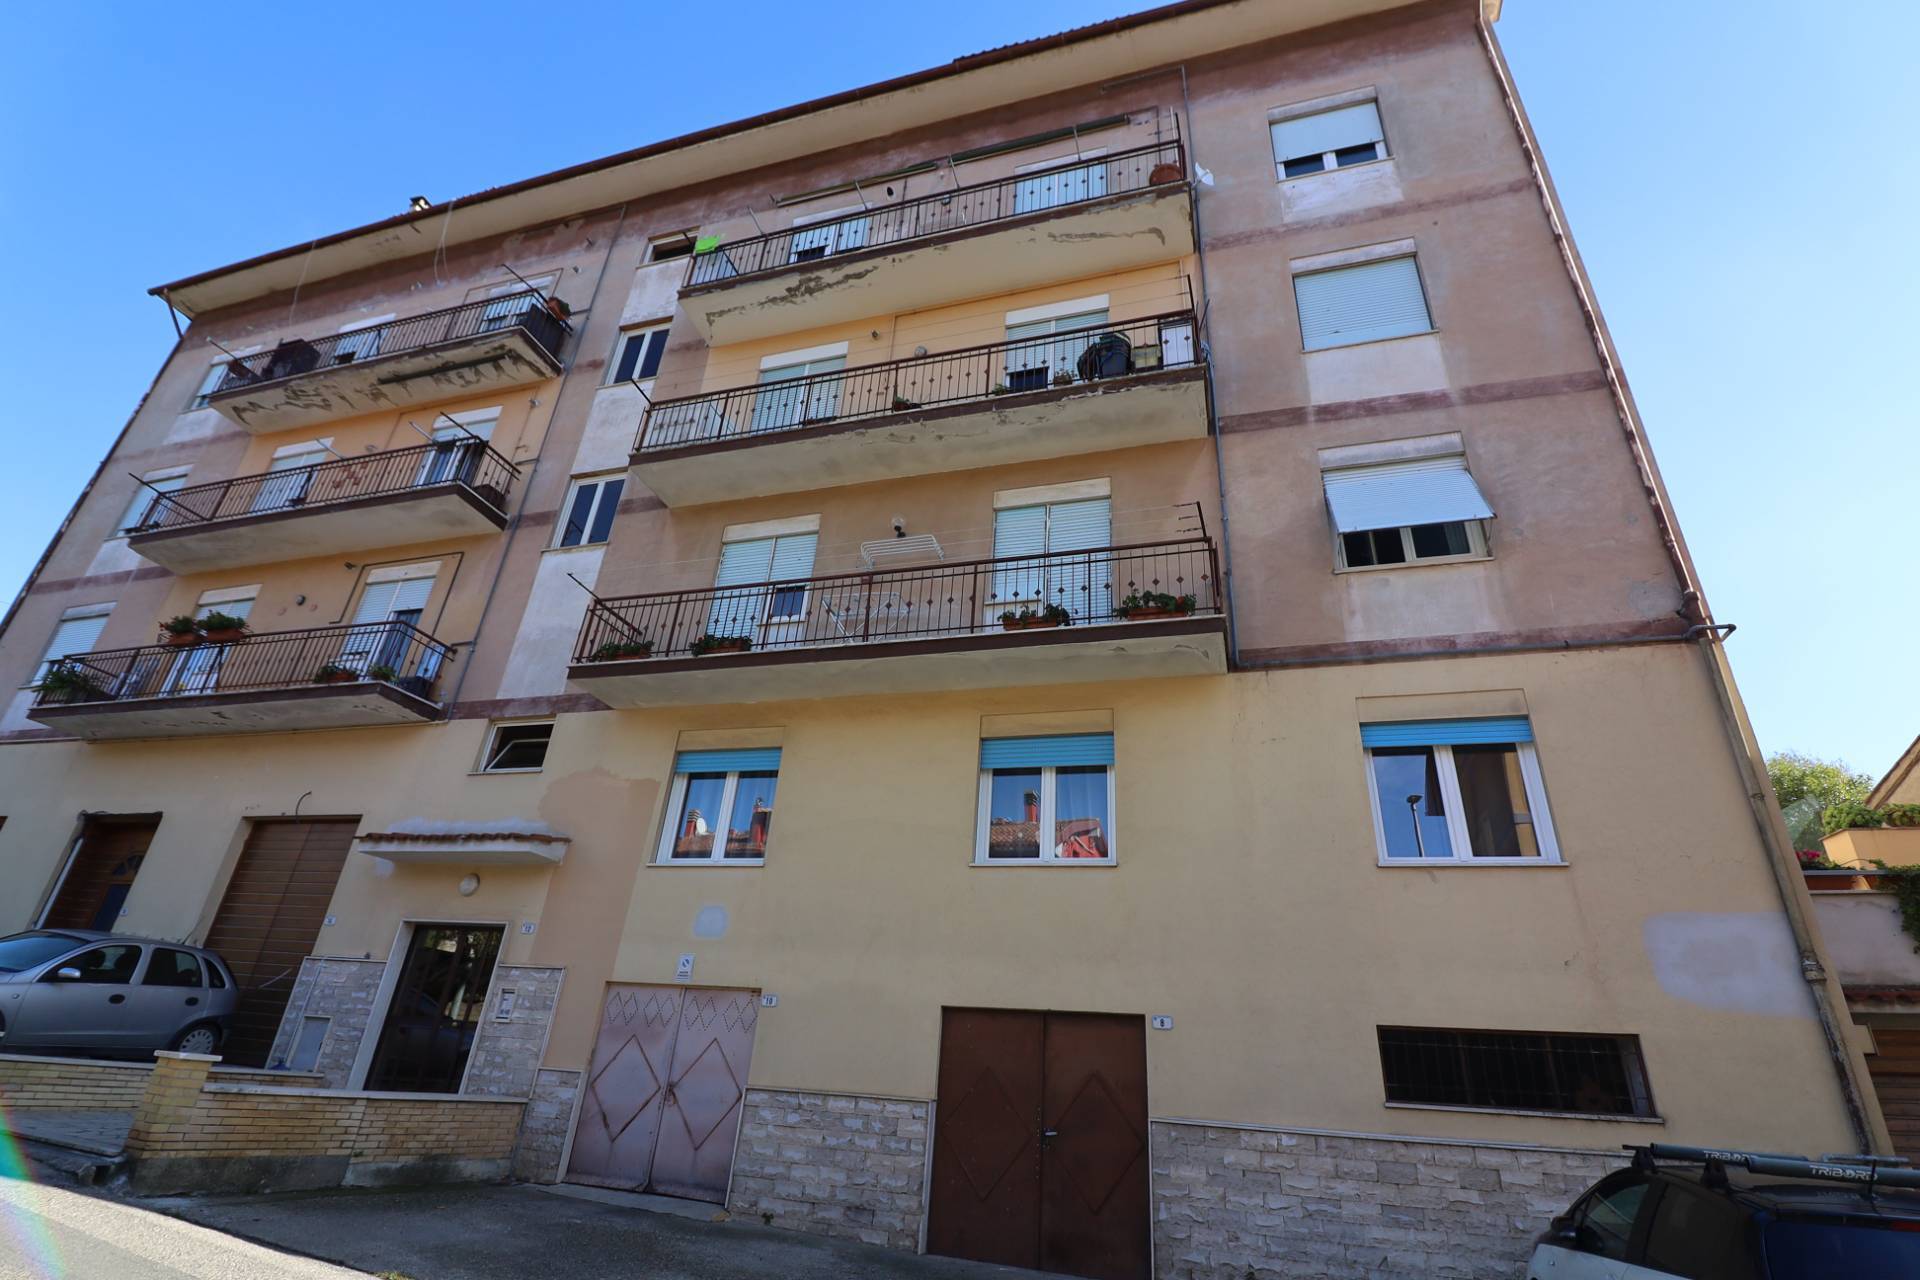 Appartamento in vendita a Ronciglione, 3 locali, zona Località: semi-centrale, prezzo € 40.000 | PortaleAgenzieImmobiliari.it